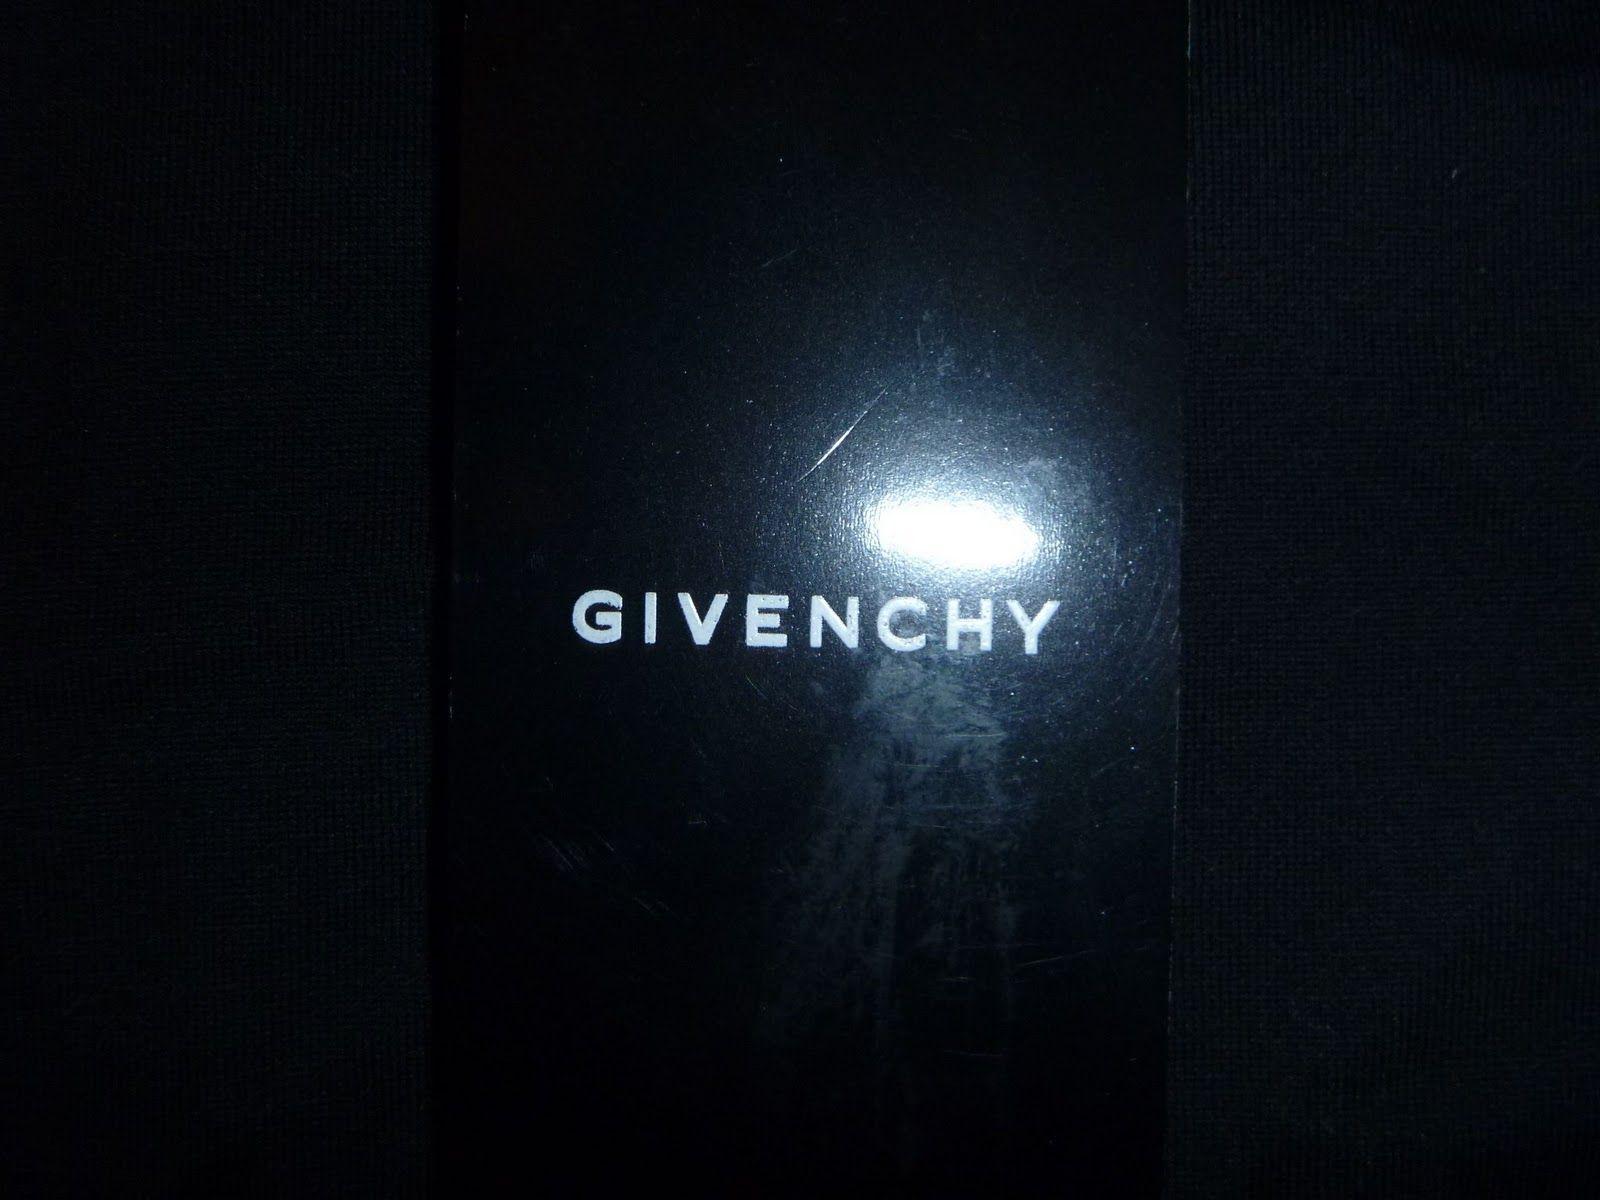 Givenchy Wallpaper. Givenchy Wallpaper